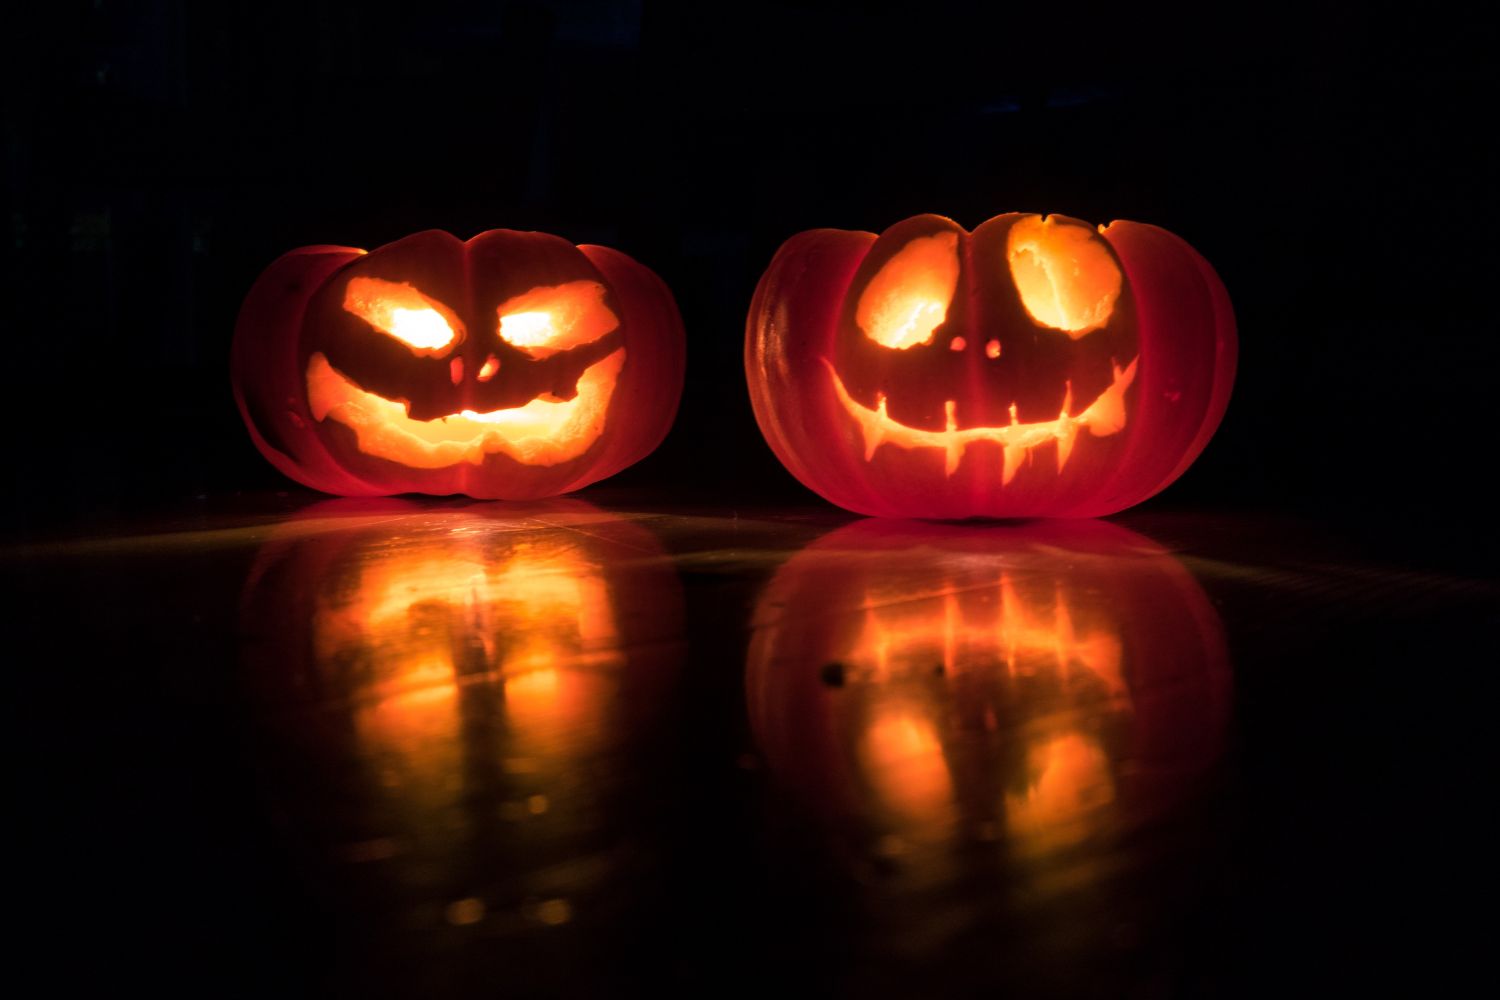 pumpkin lantern Photo by David Menidrey on unsplash